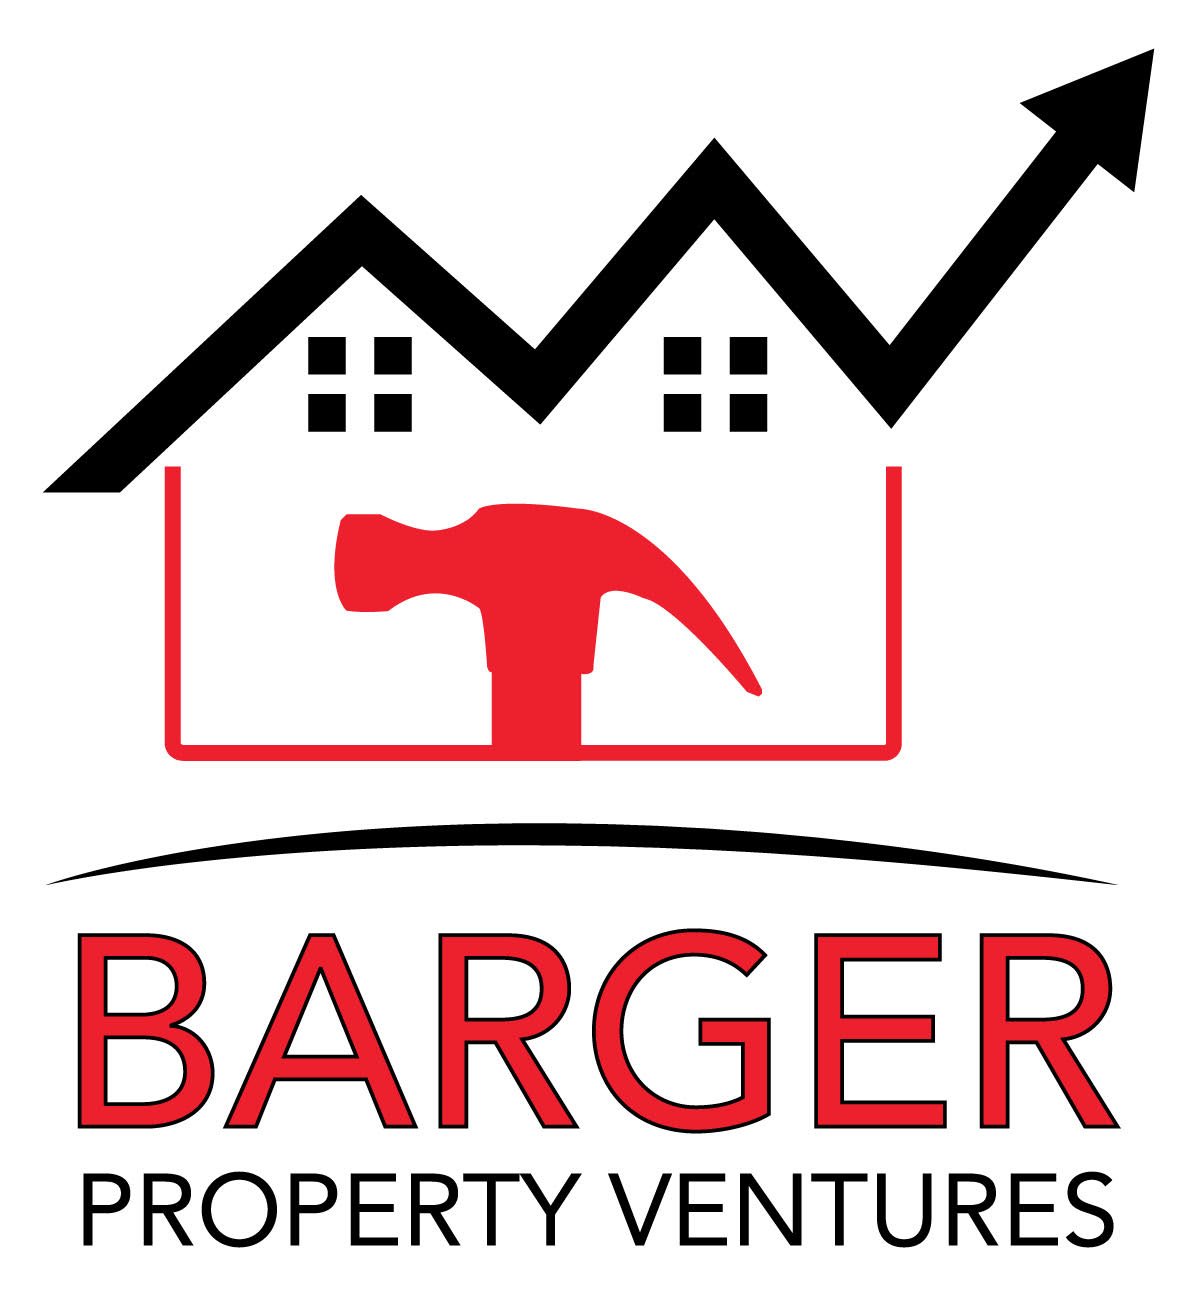 Barger Property Ventures